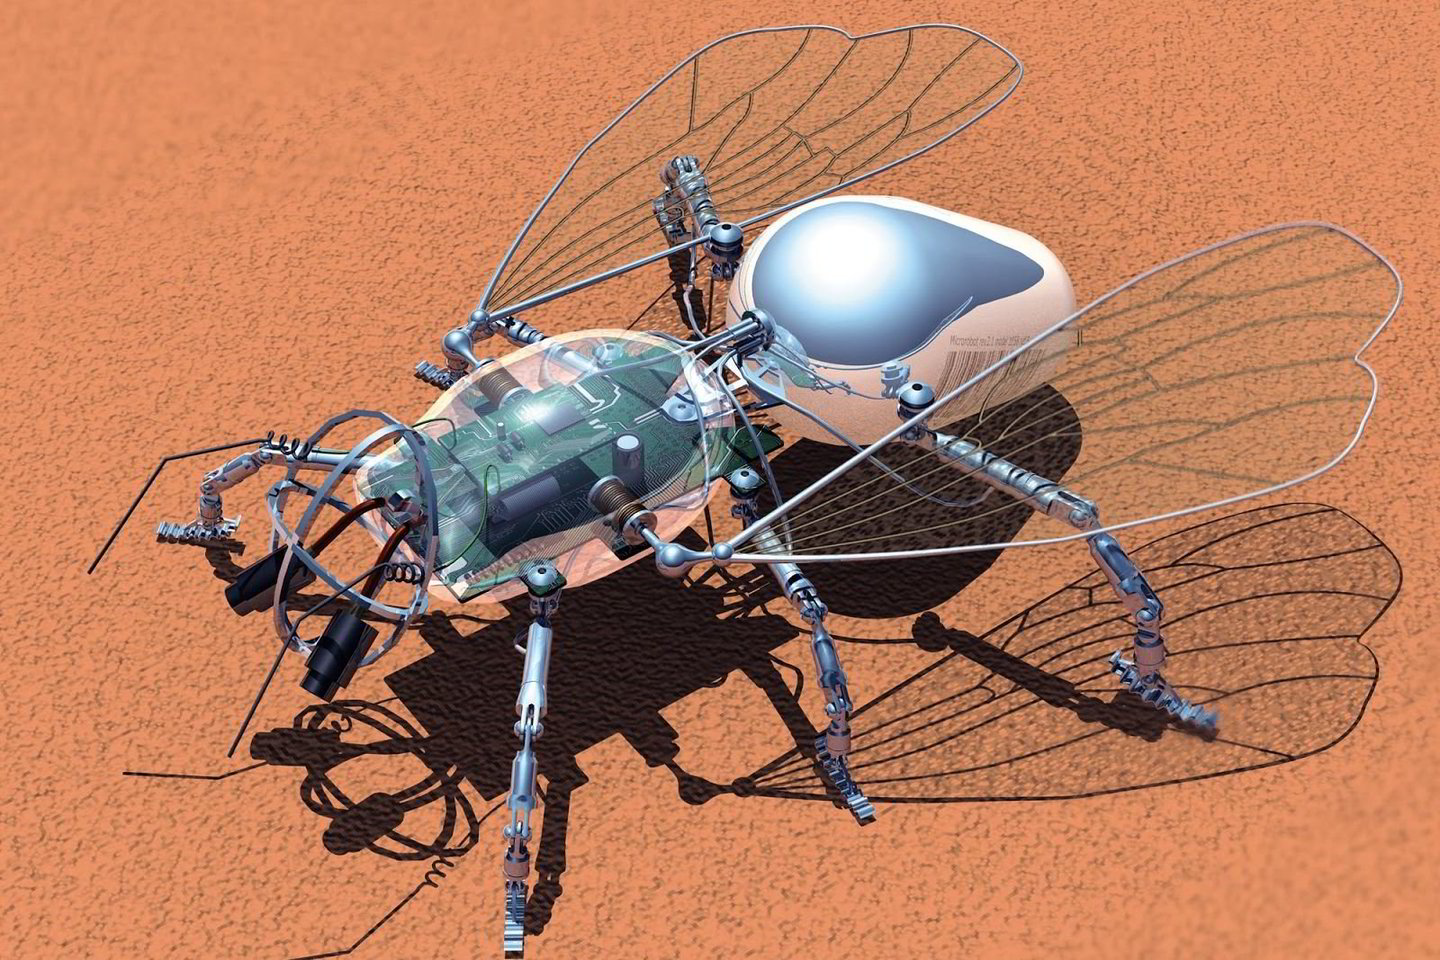  Paskirta 125 000 dolerių suma, už kuri1 turės būti sukurtas bičių-robočių spiečius. Jos galės skraidyti retoje Marso atmosferoje ir jutikliais rinkti informaciją. (Asociatyvinė iliustr.)<br> Aminalg iliustr.